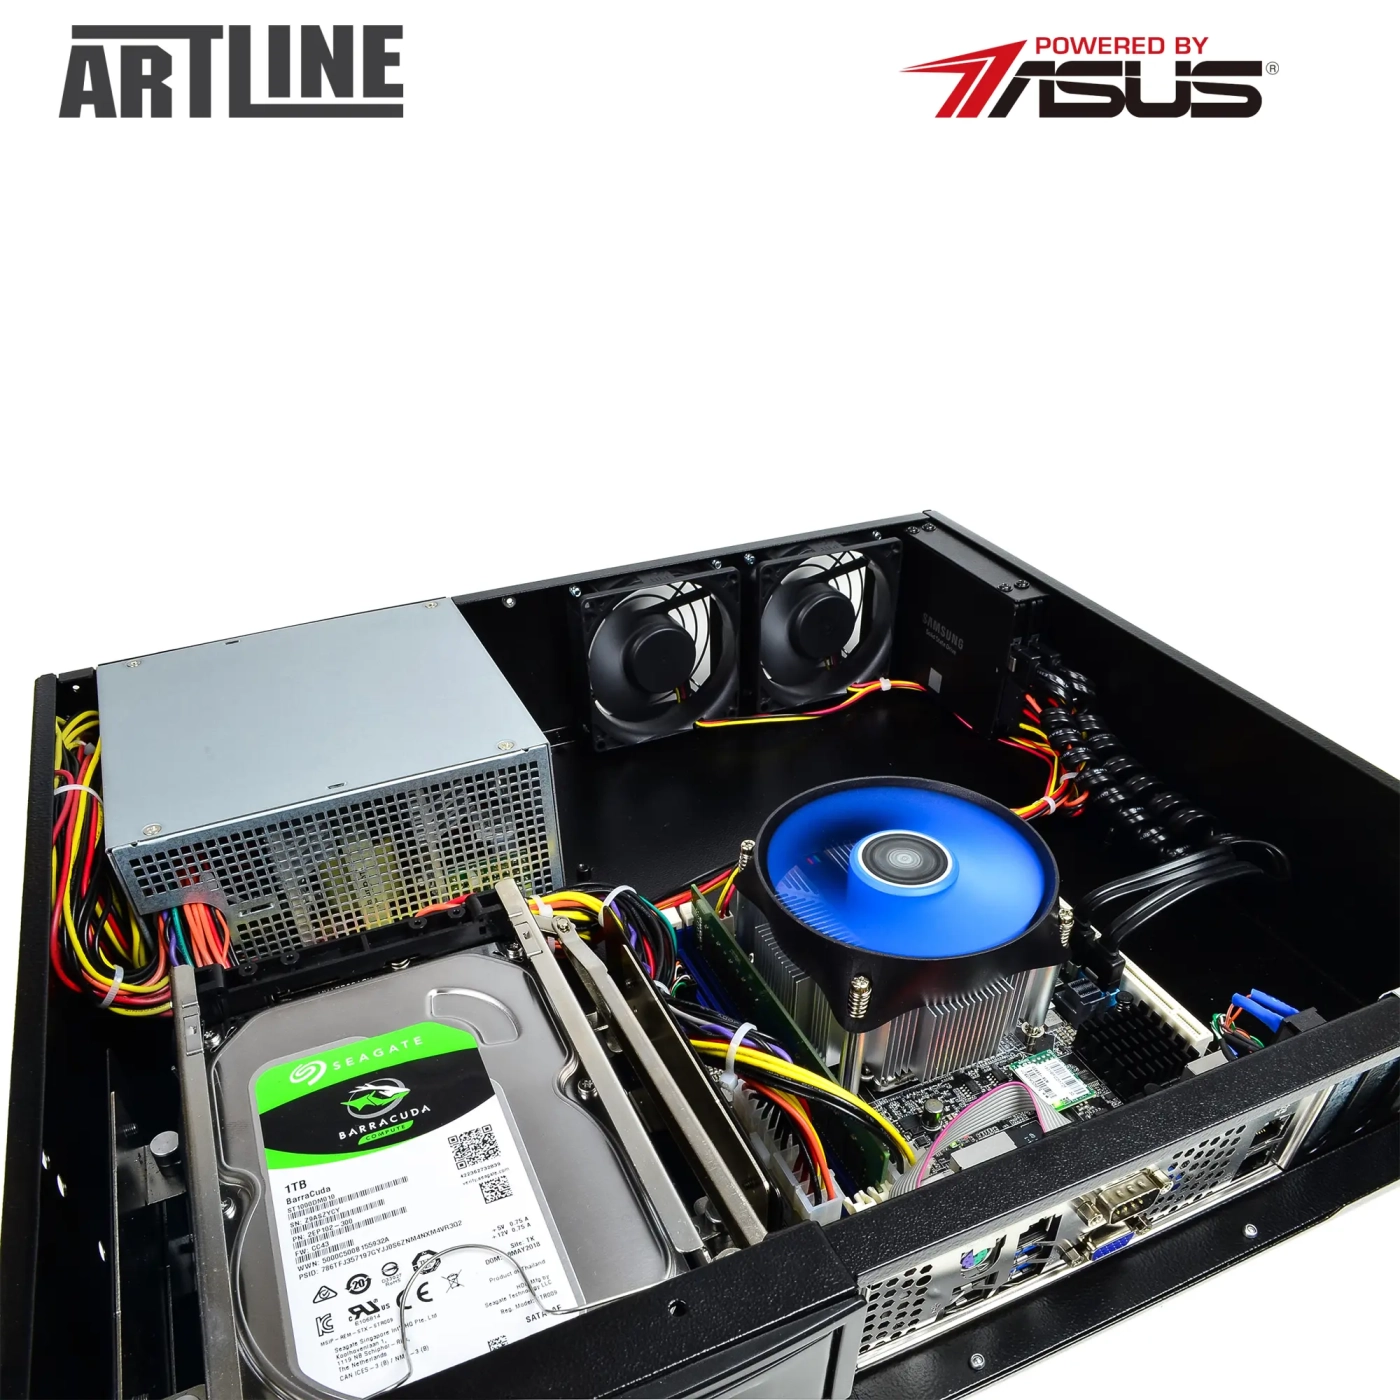 Купить Сервер ARTLINE Business R37 (R37v99) - фото 10